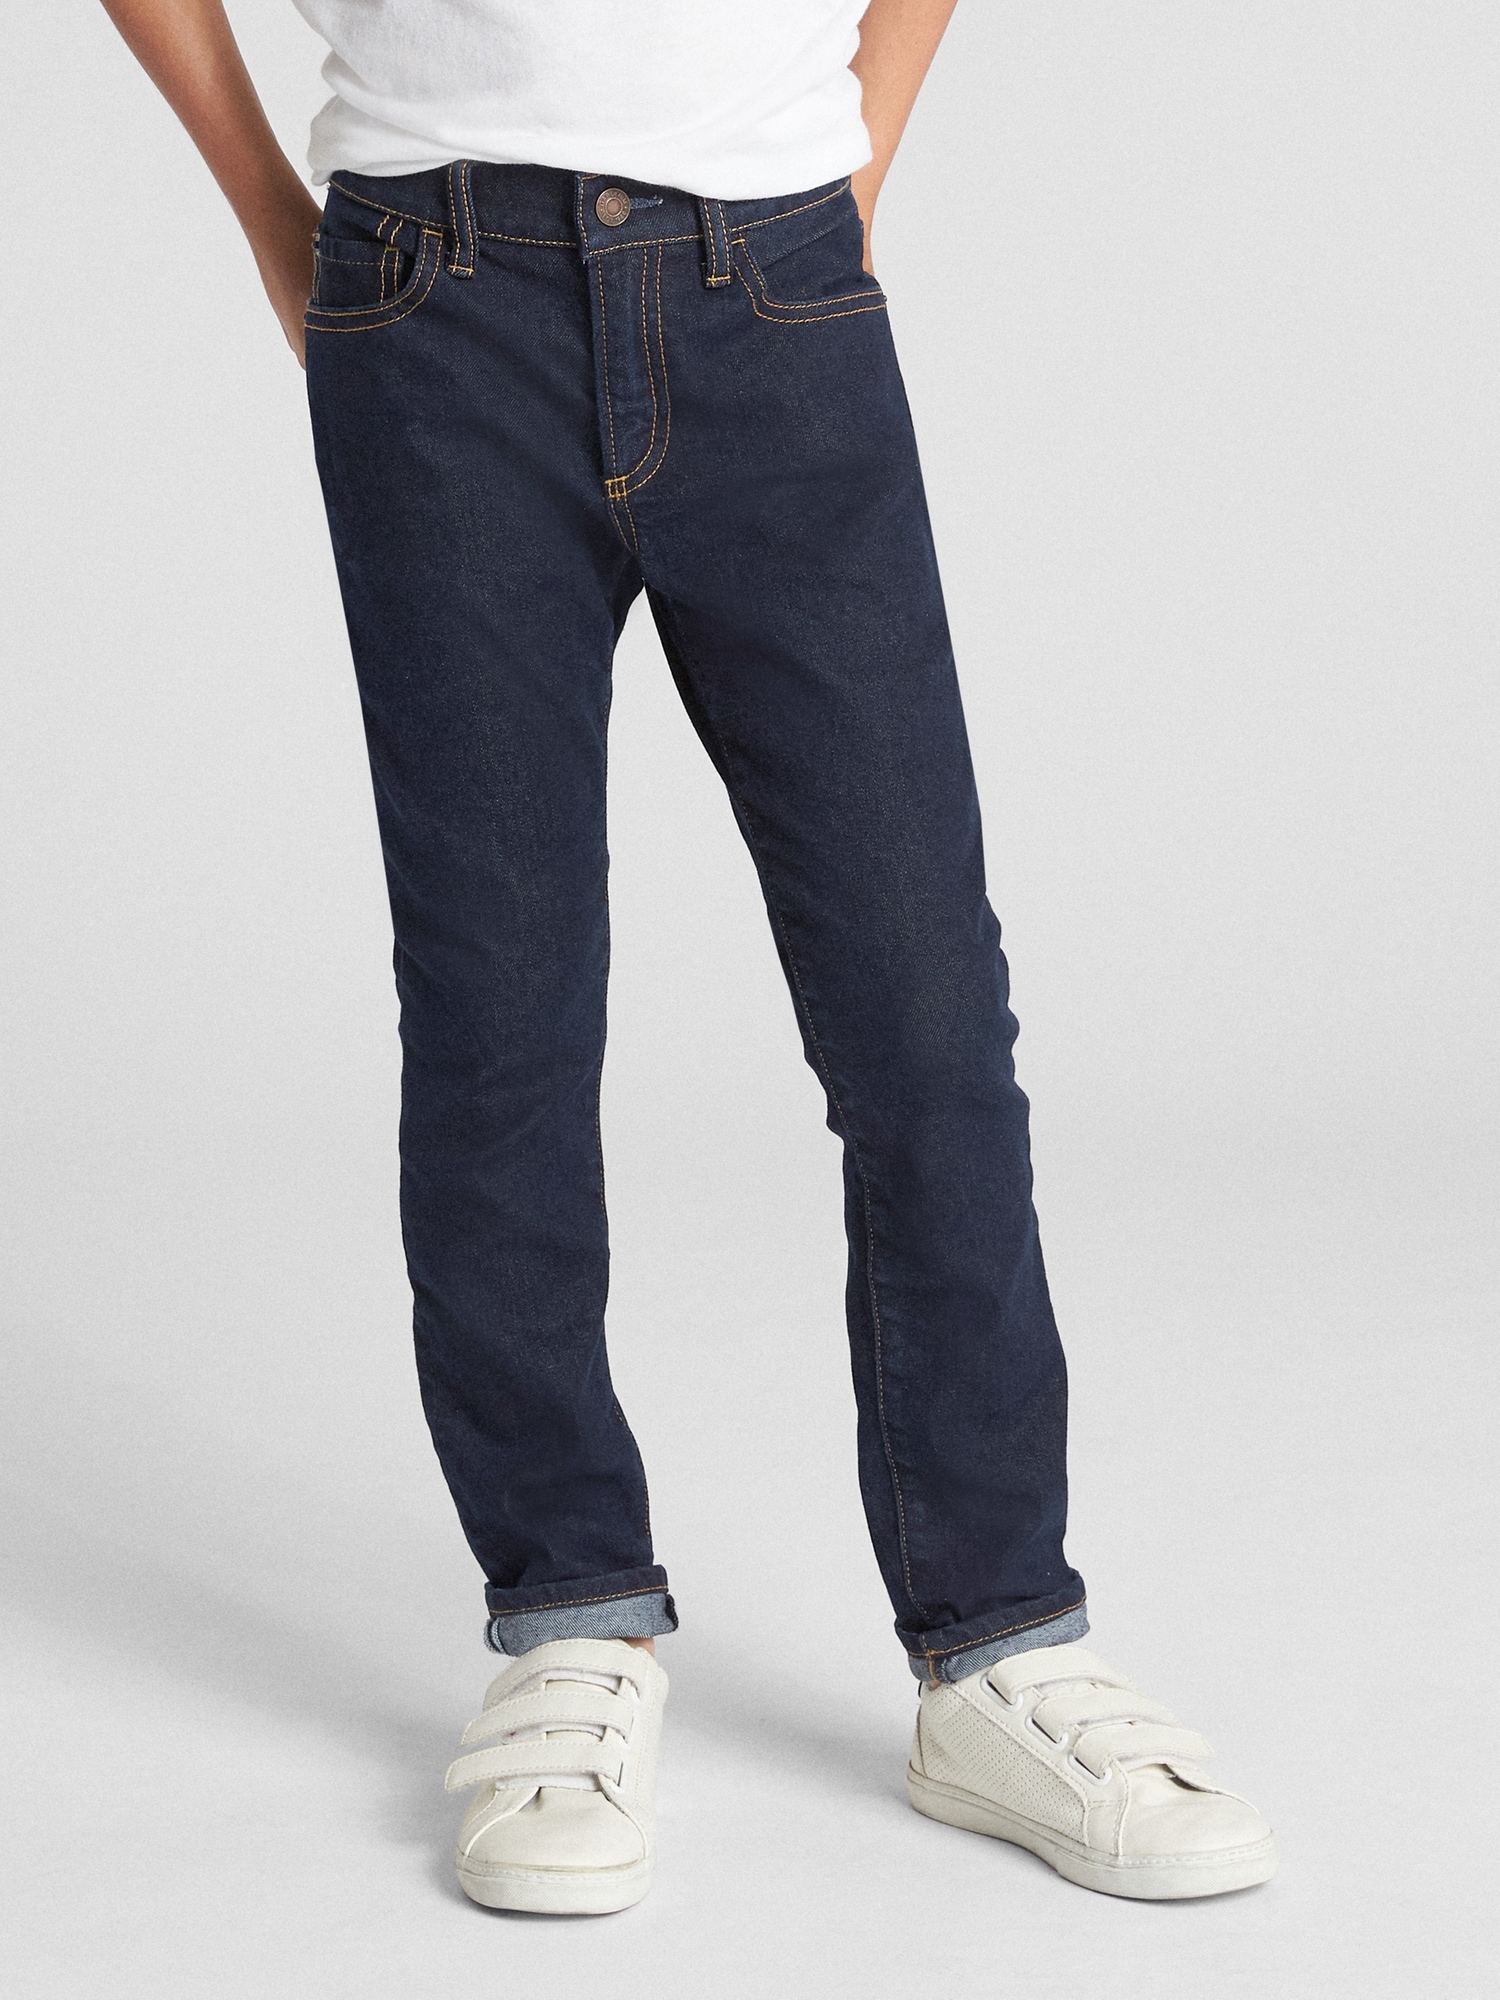 Kids Skinny Jeans with Stretch | Gap